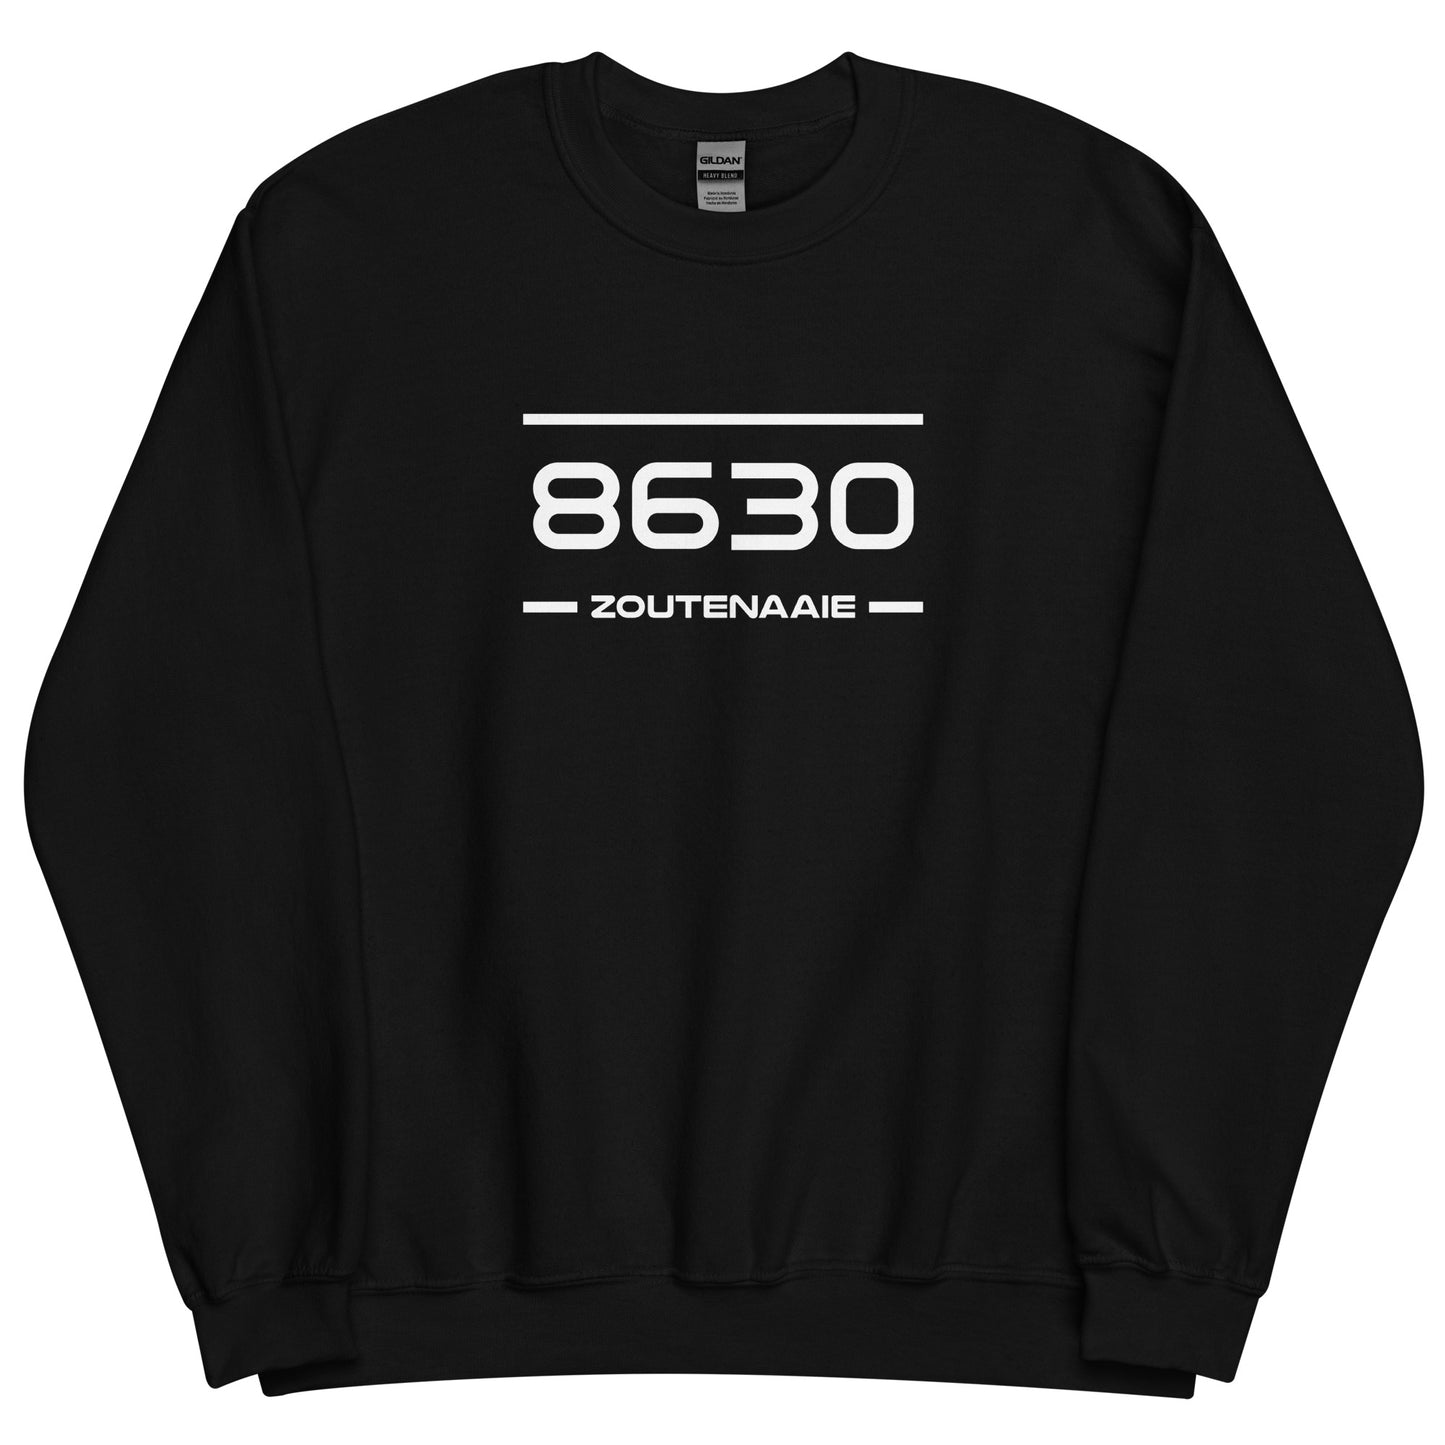 Sweater - 8630 - Zoutenaaie (M/V)